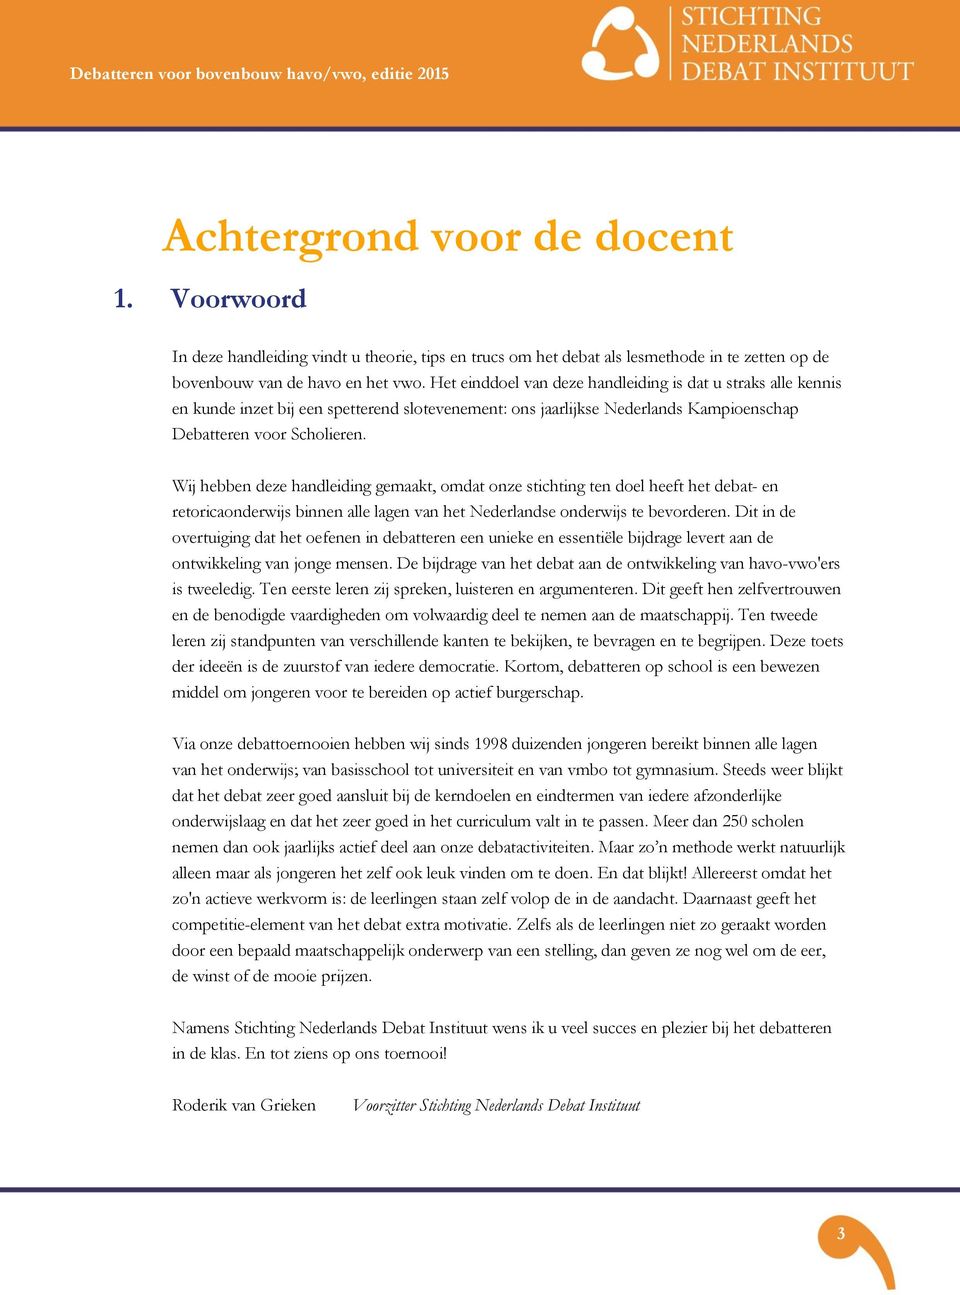 Wij hebben deze handleiding gemaakt, omdat onze stichting ten doel heeft het debat- en retoricaonderwijs binnen alle lagen van het Nederlandse onderwijs te bevorderen.